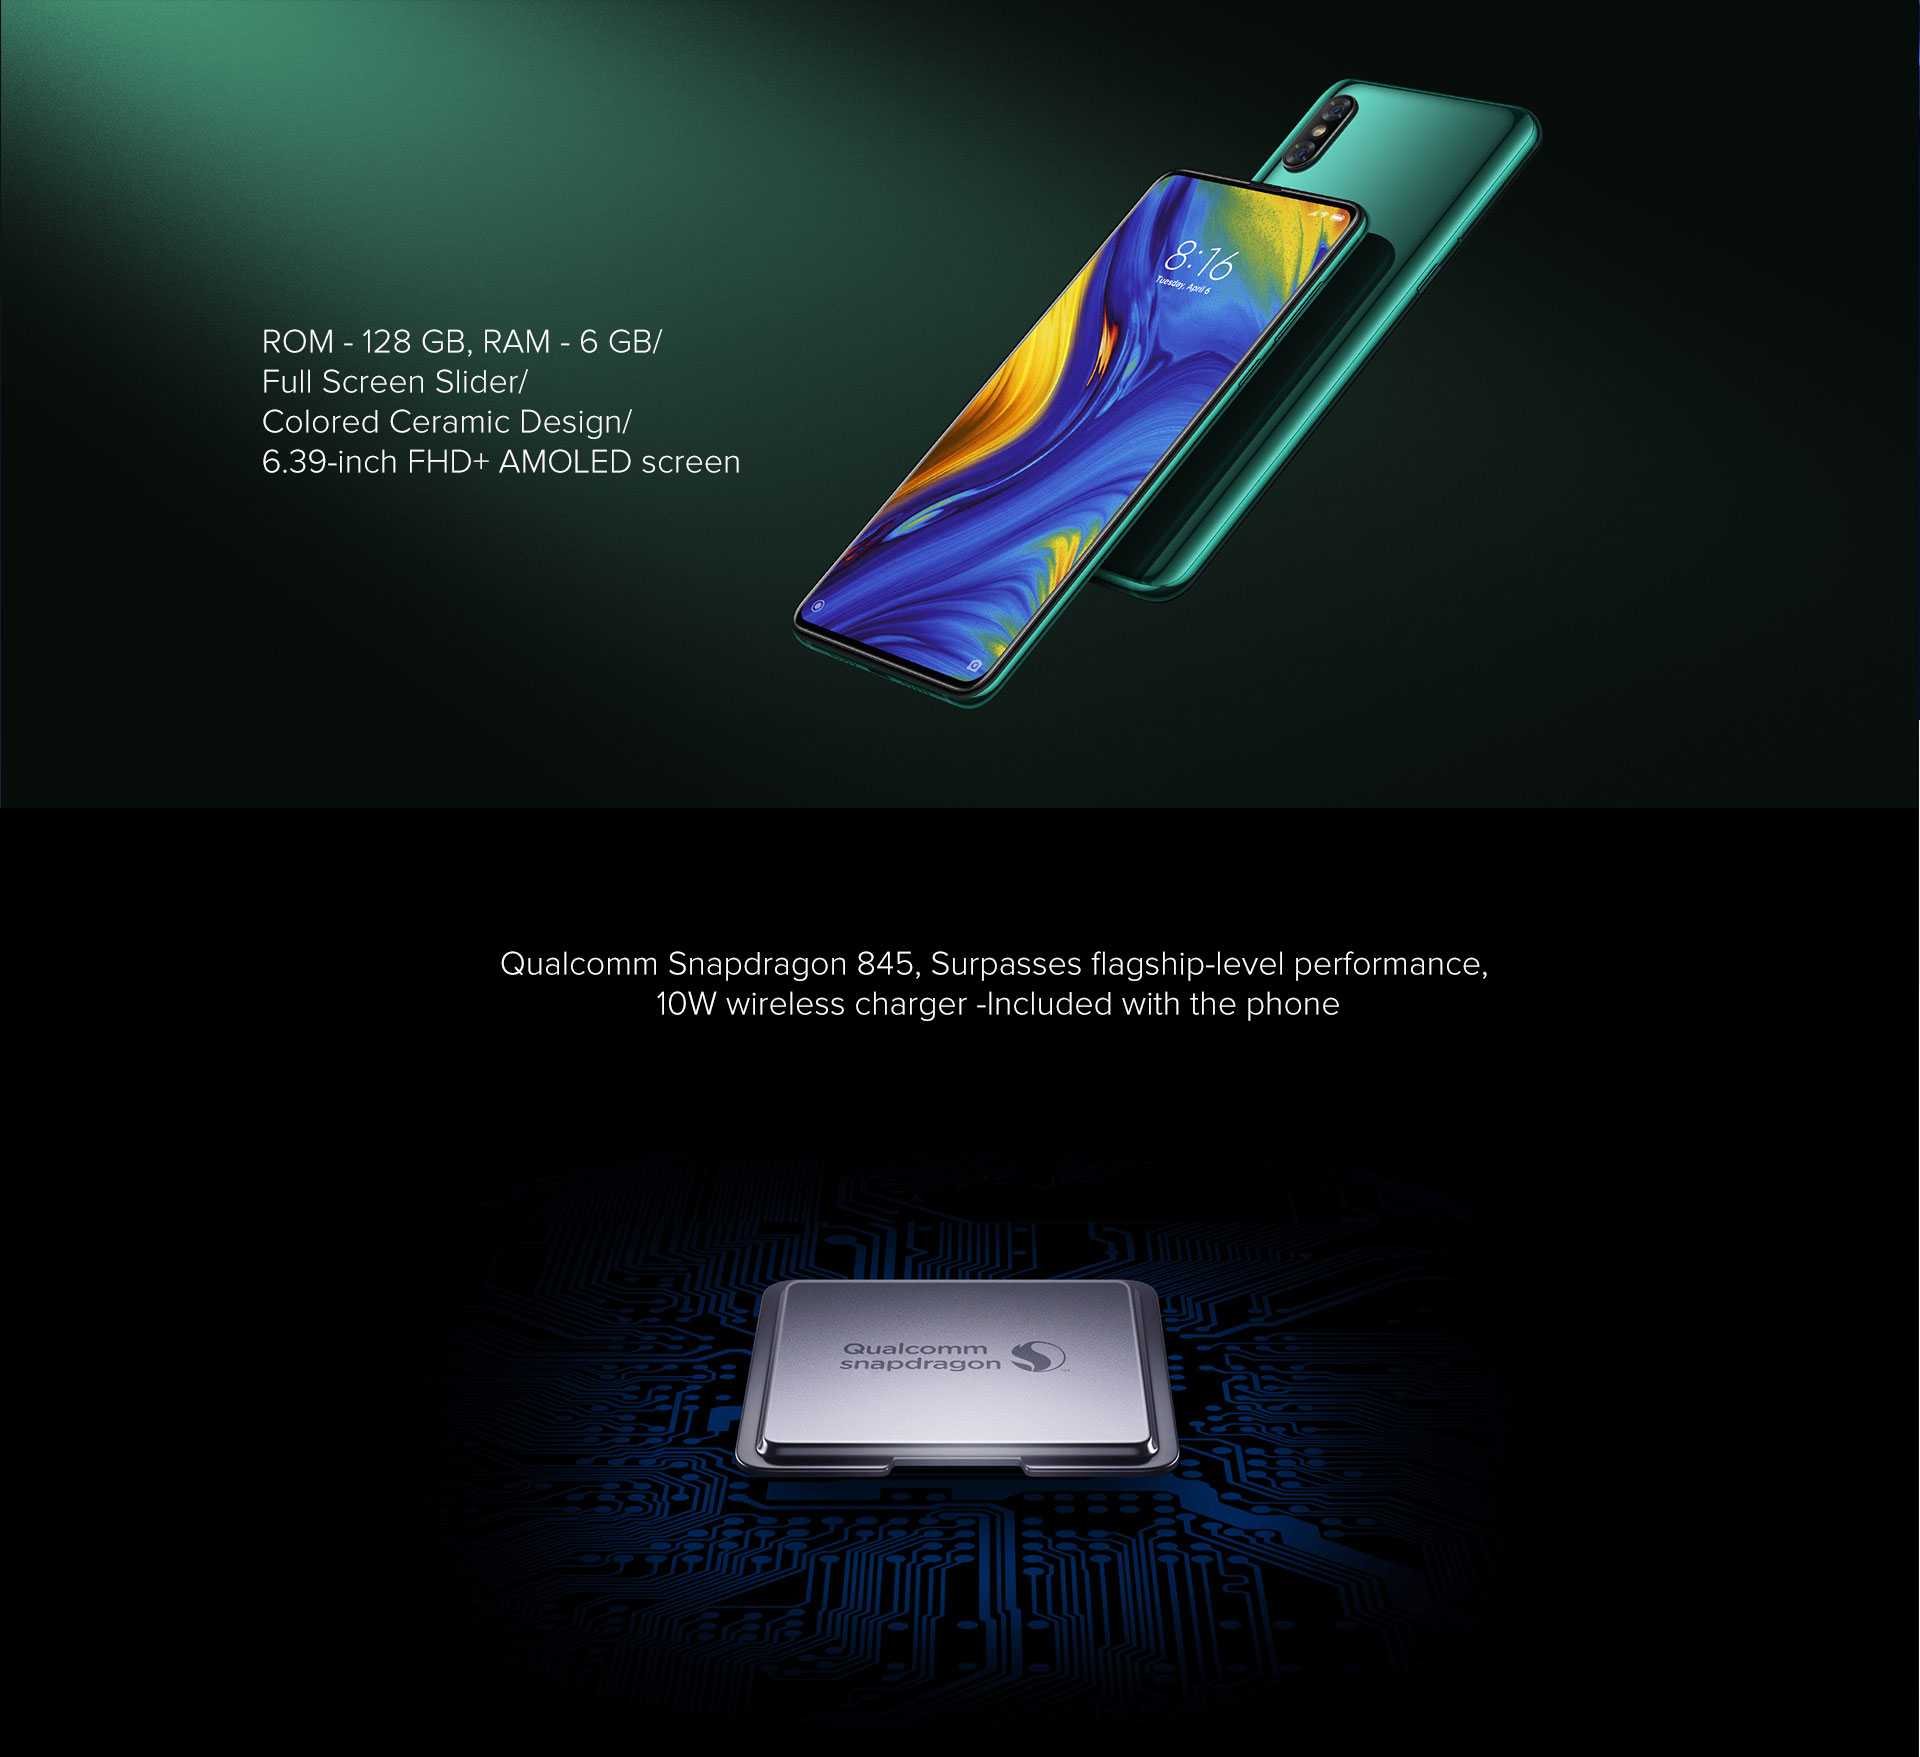 Xiaomi Mi MIX 3 Snapdragon 855 Octa core 5G Smartphone